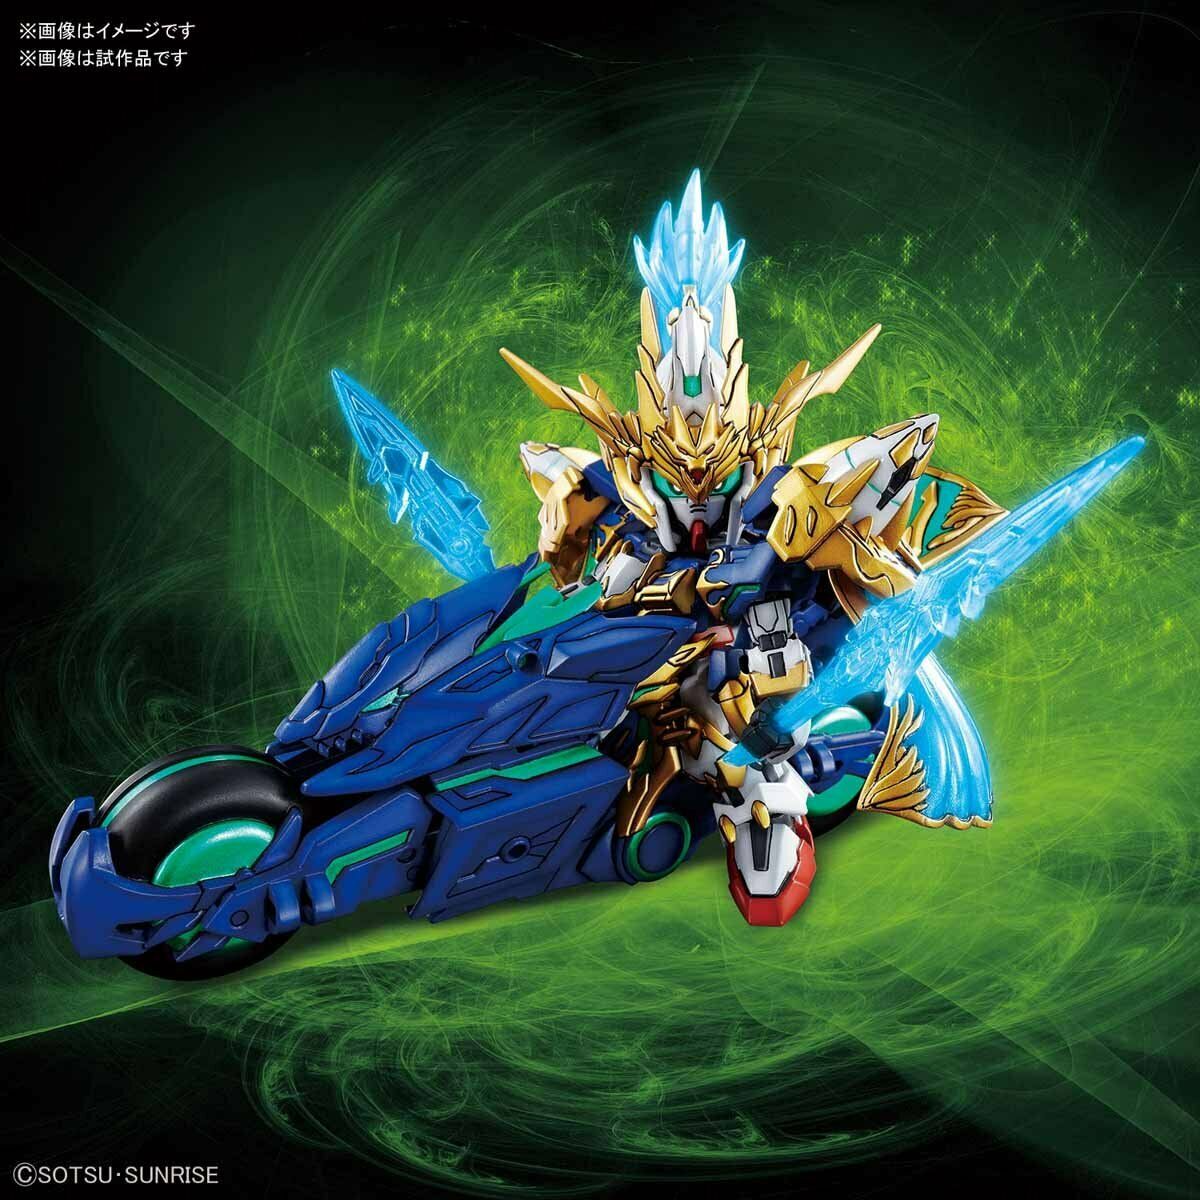 Sangoku Soketsuden - Zhao Yun 00 Gundam & Blue Dragon Drive